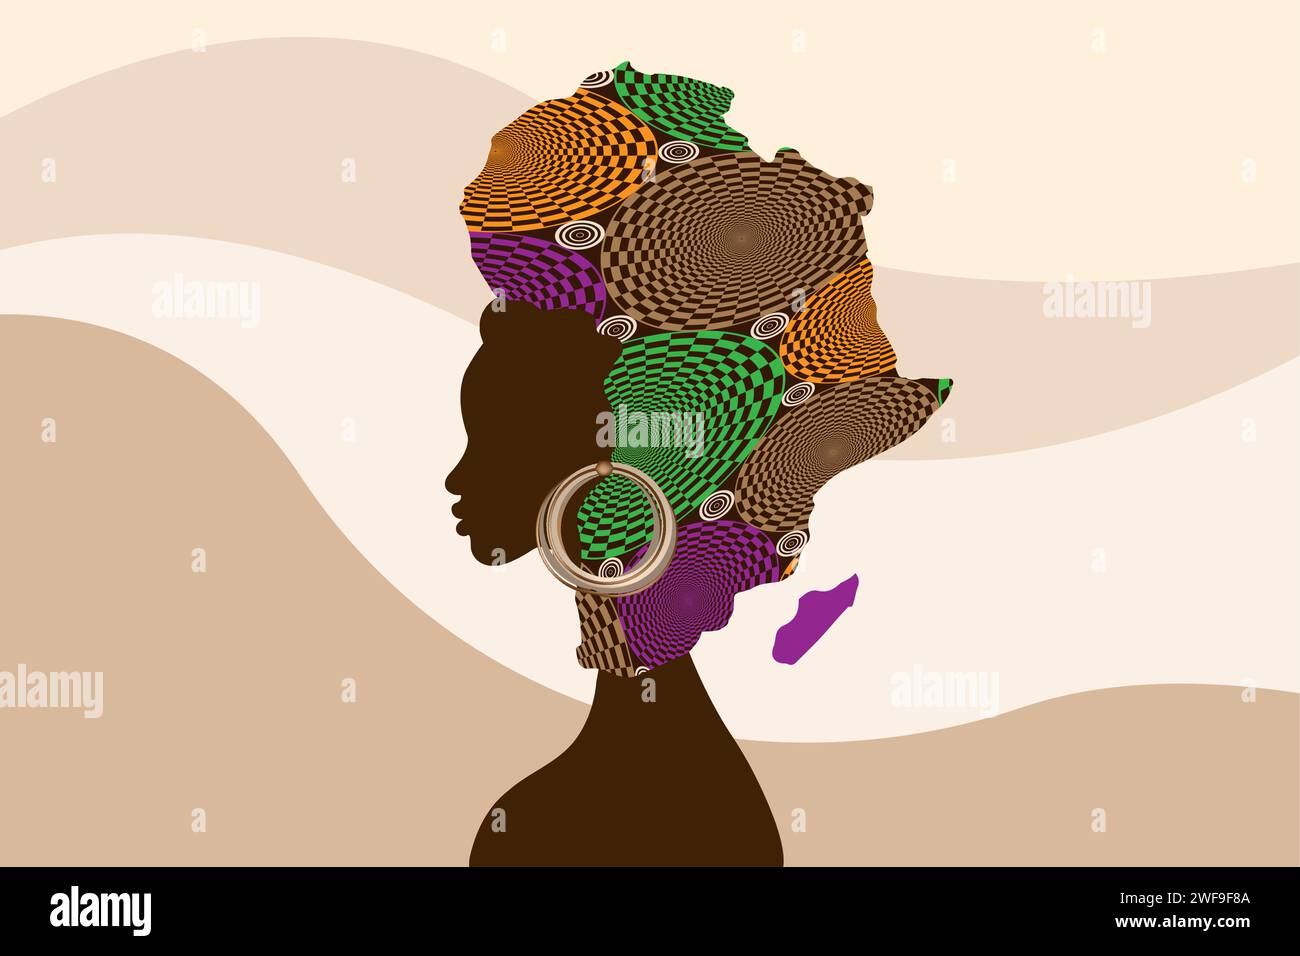 Concept de femme africaine, silhouette profil visage avec turban en tissu ethnique en forme de carte de l'Afrique. Modèle de conception de logo de beauté afro tribal Illustration de Vecteur